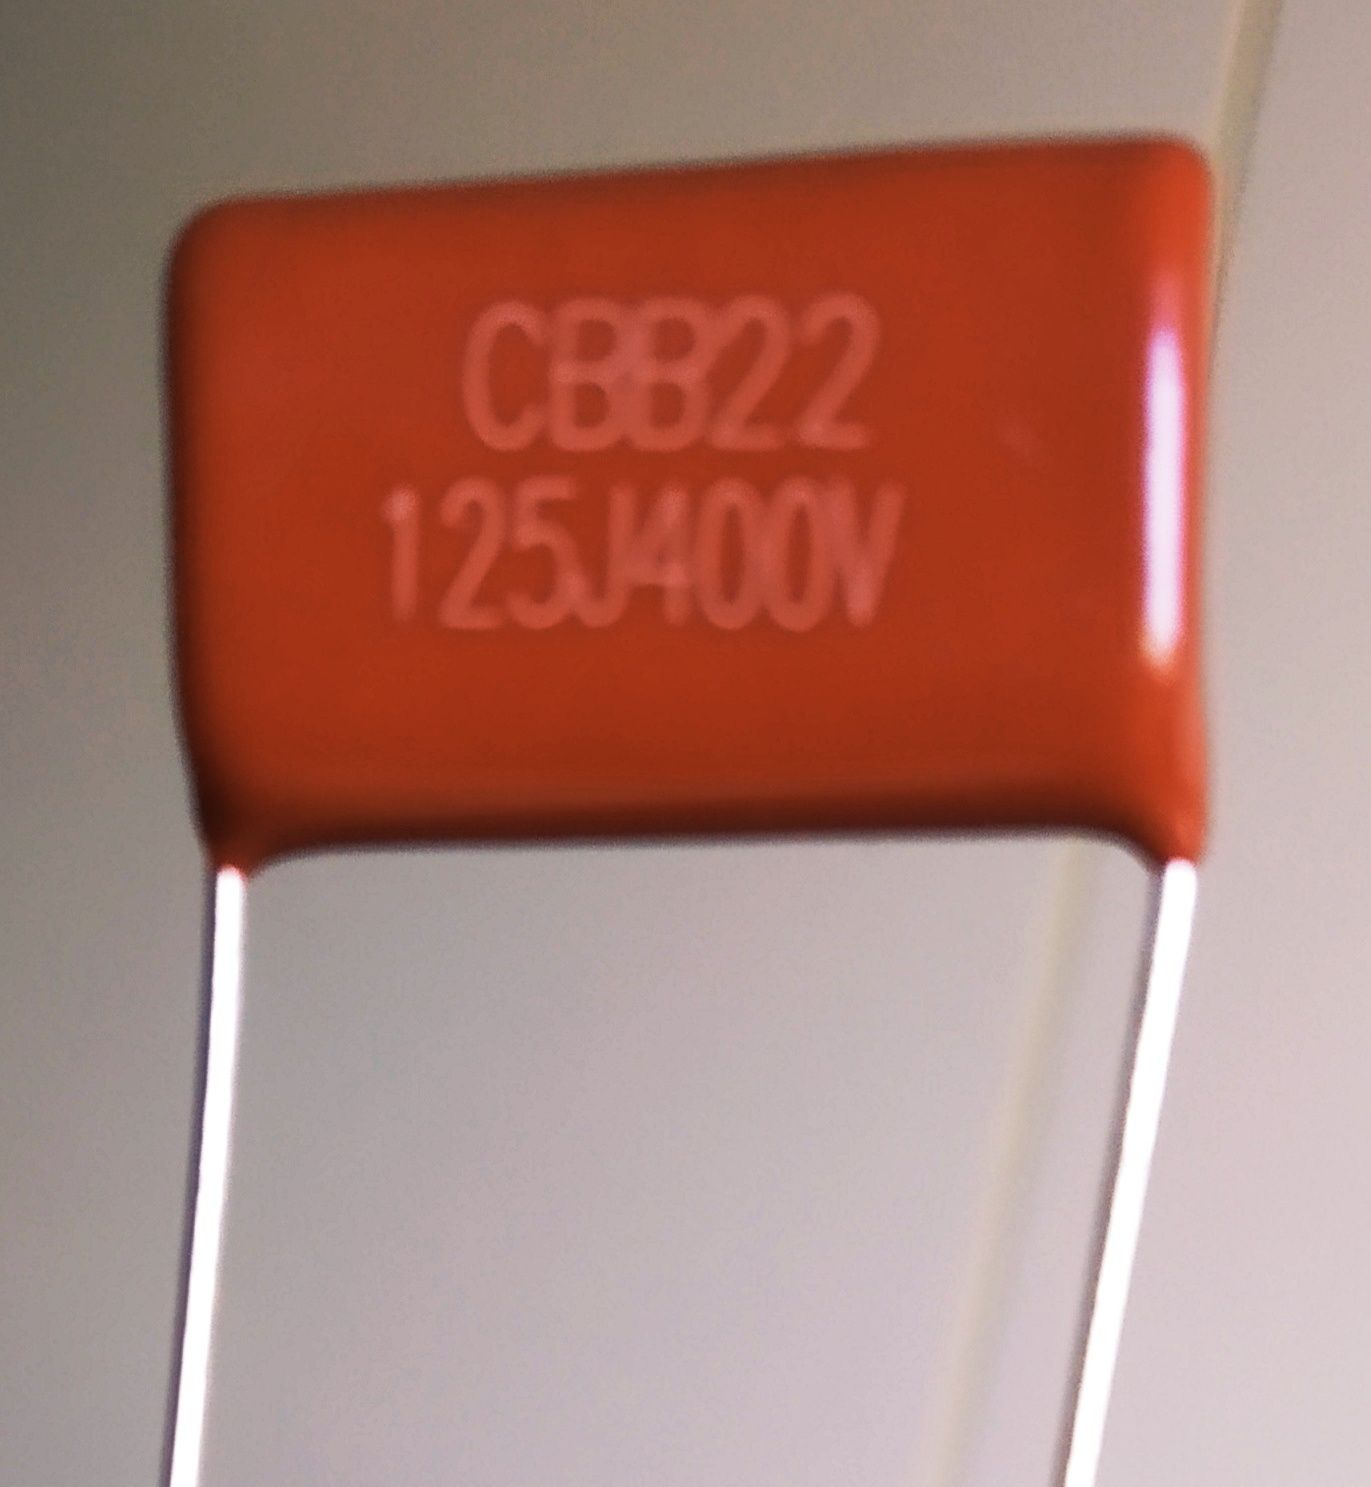 Cbb22 125J 400V Condensadores  Polypropylene LED